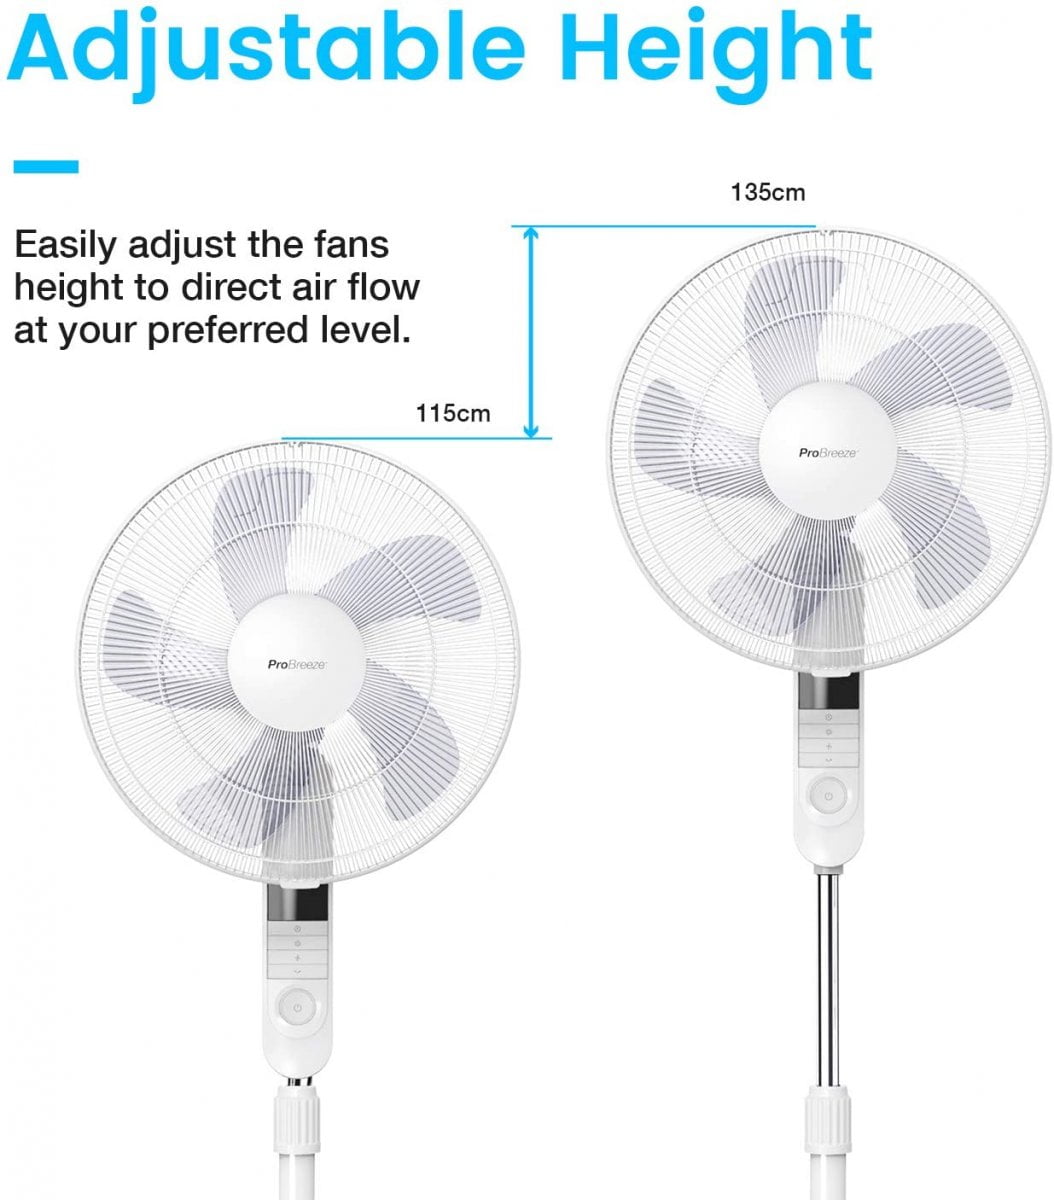  Ventilateur sur pied (135 cm) avec télécommande - Blanc - Pro Breeze